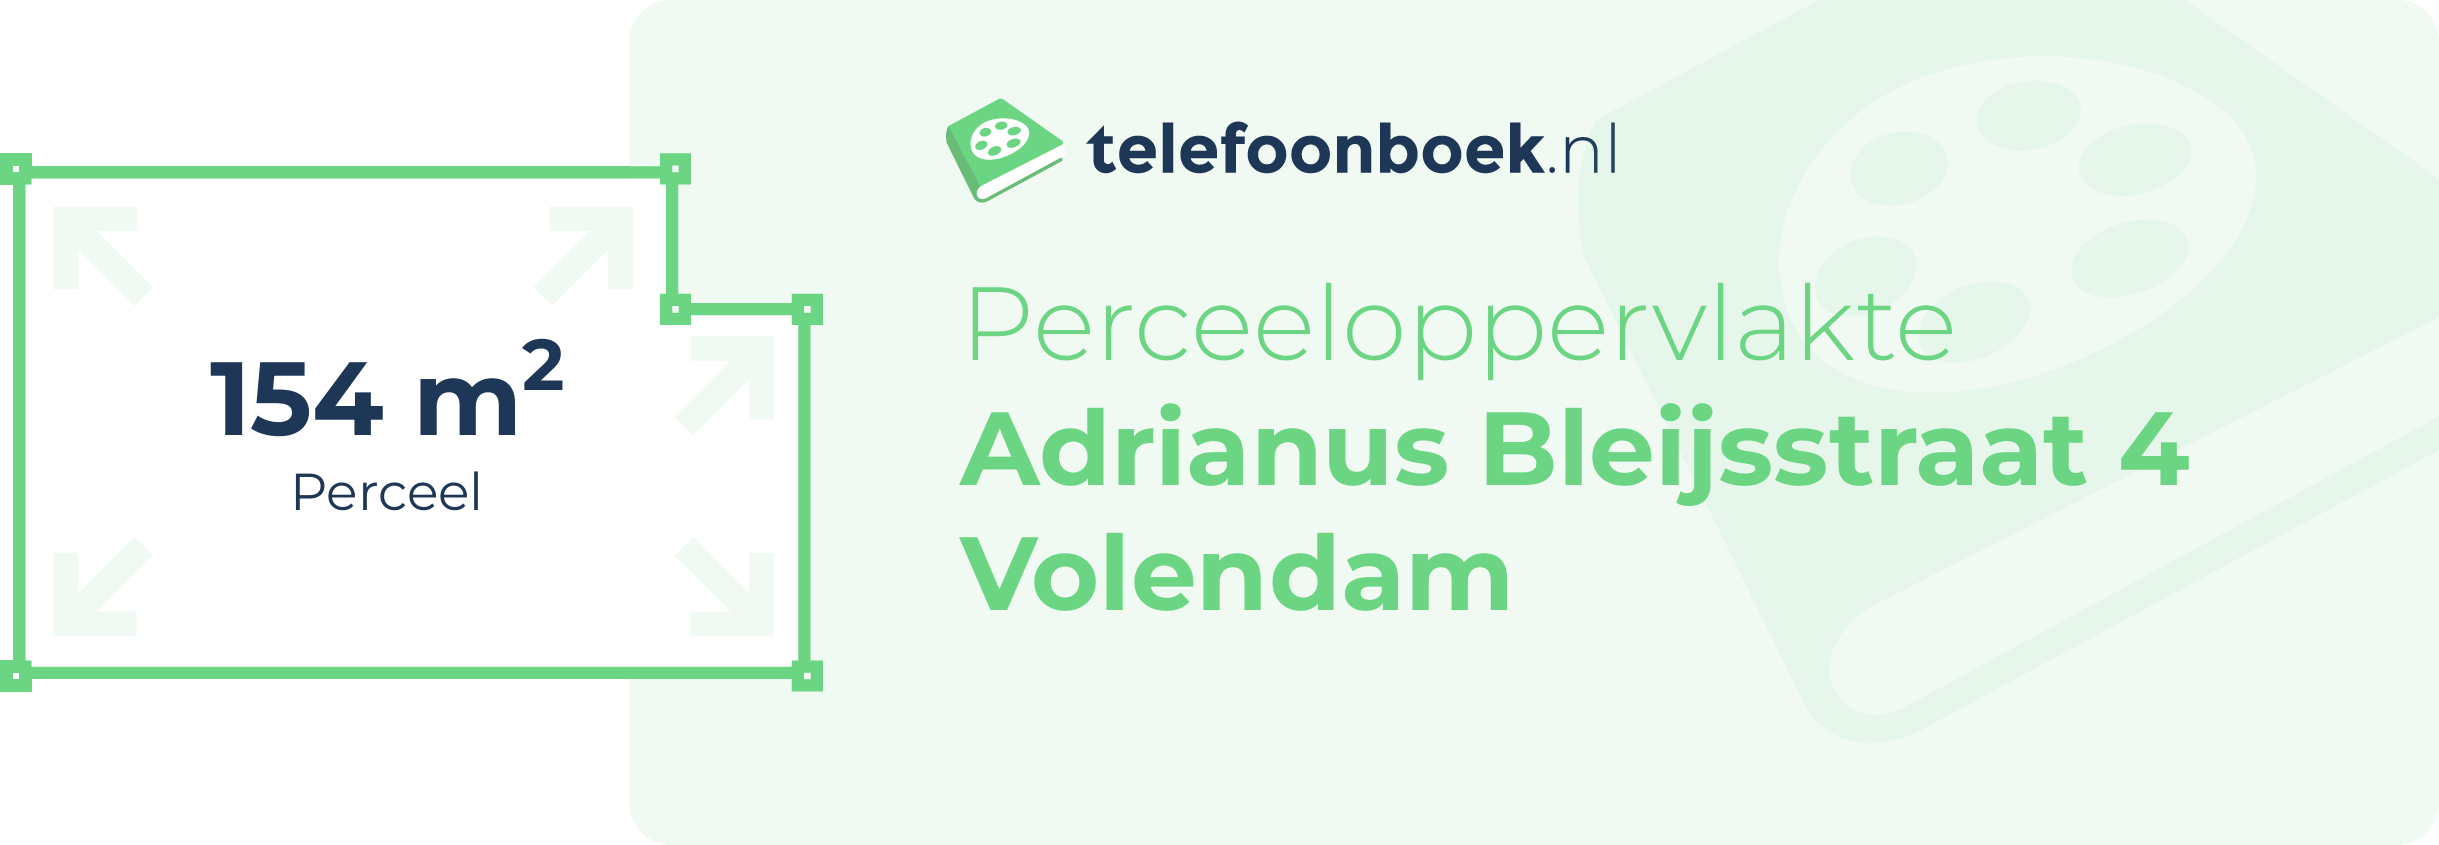 Perceeloppervlakte Adrianus Bleijsstraat 4 Volendam